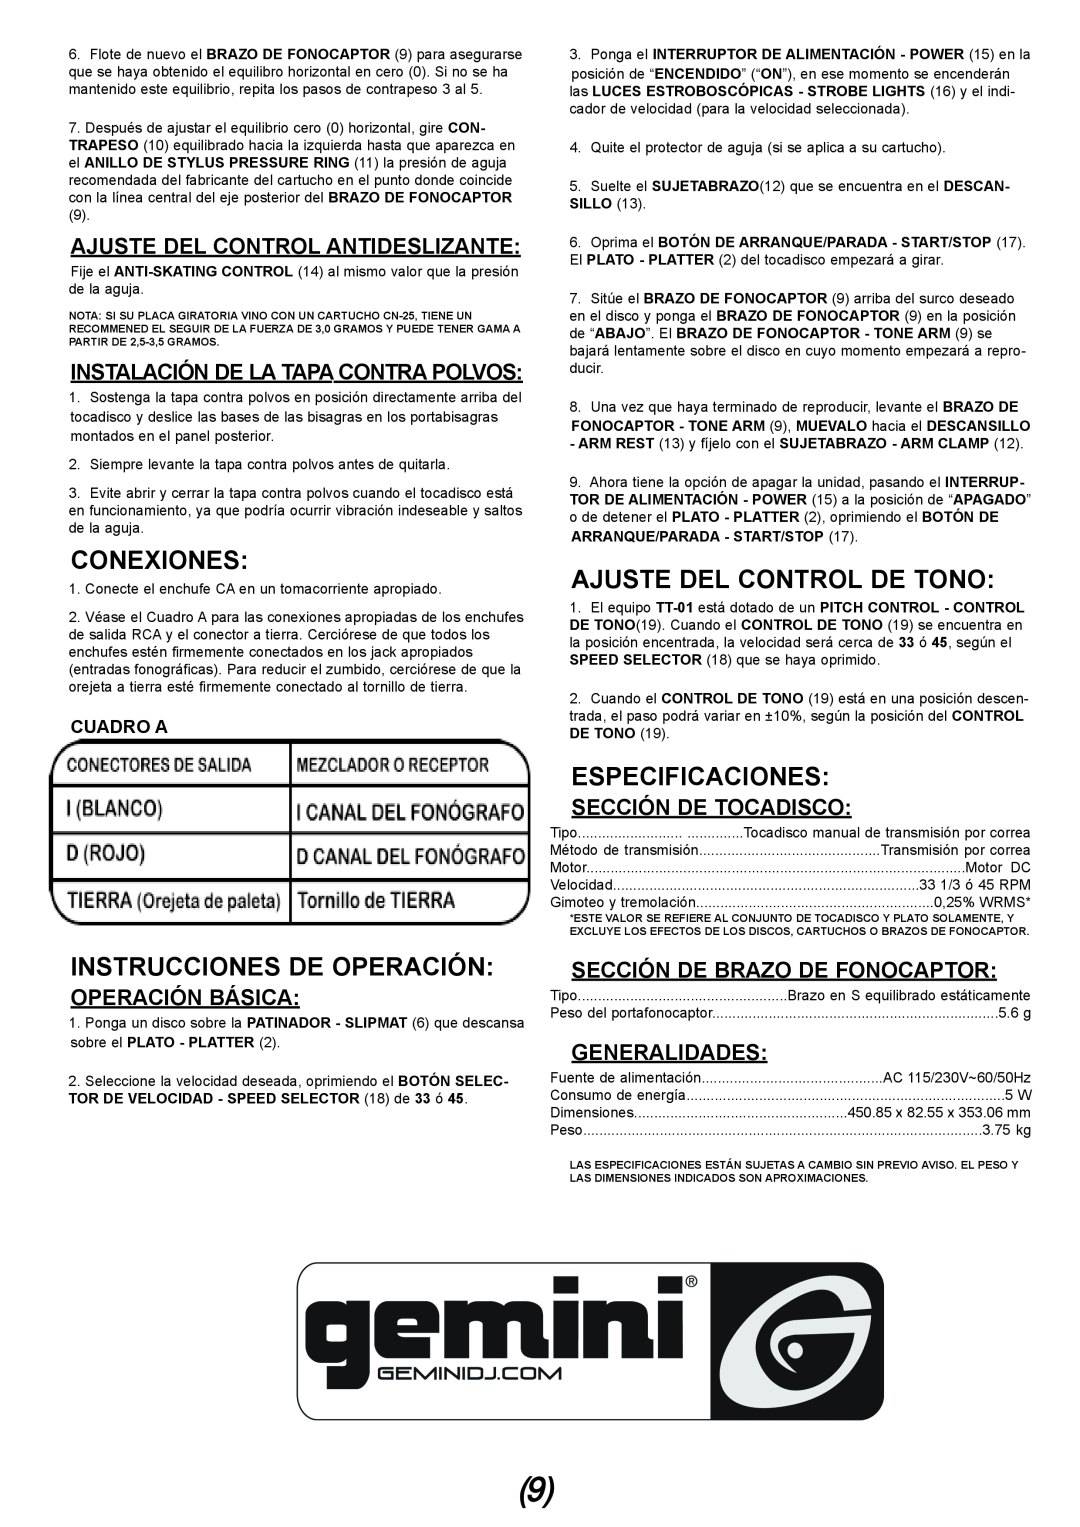 Gemini TT-01 manual Conexiones, Ajuste Del Control De Tono, Instrucciones De Operación, Especificaciones, Operación Básica 